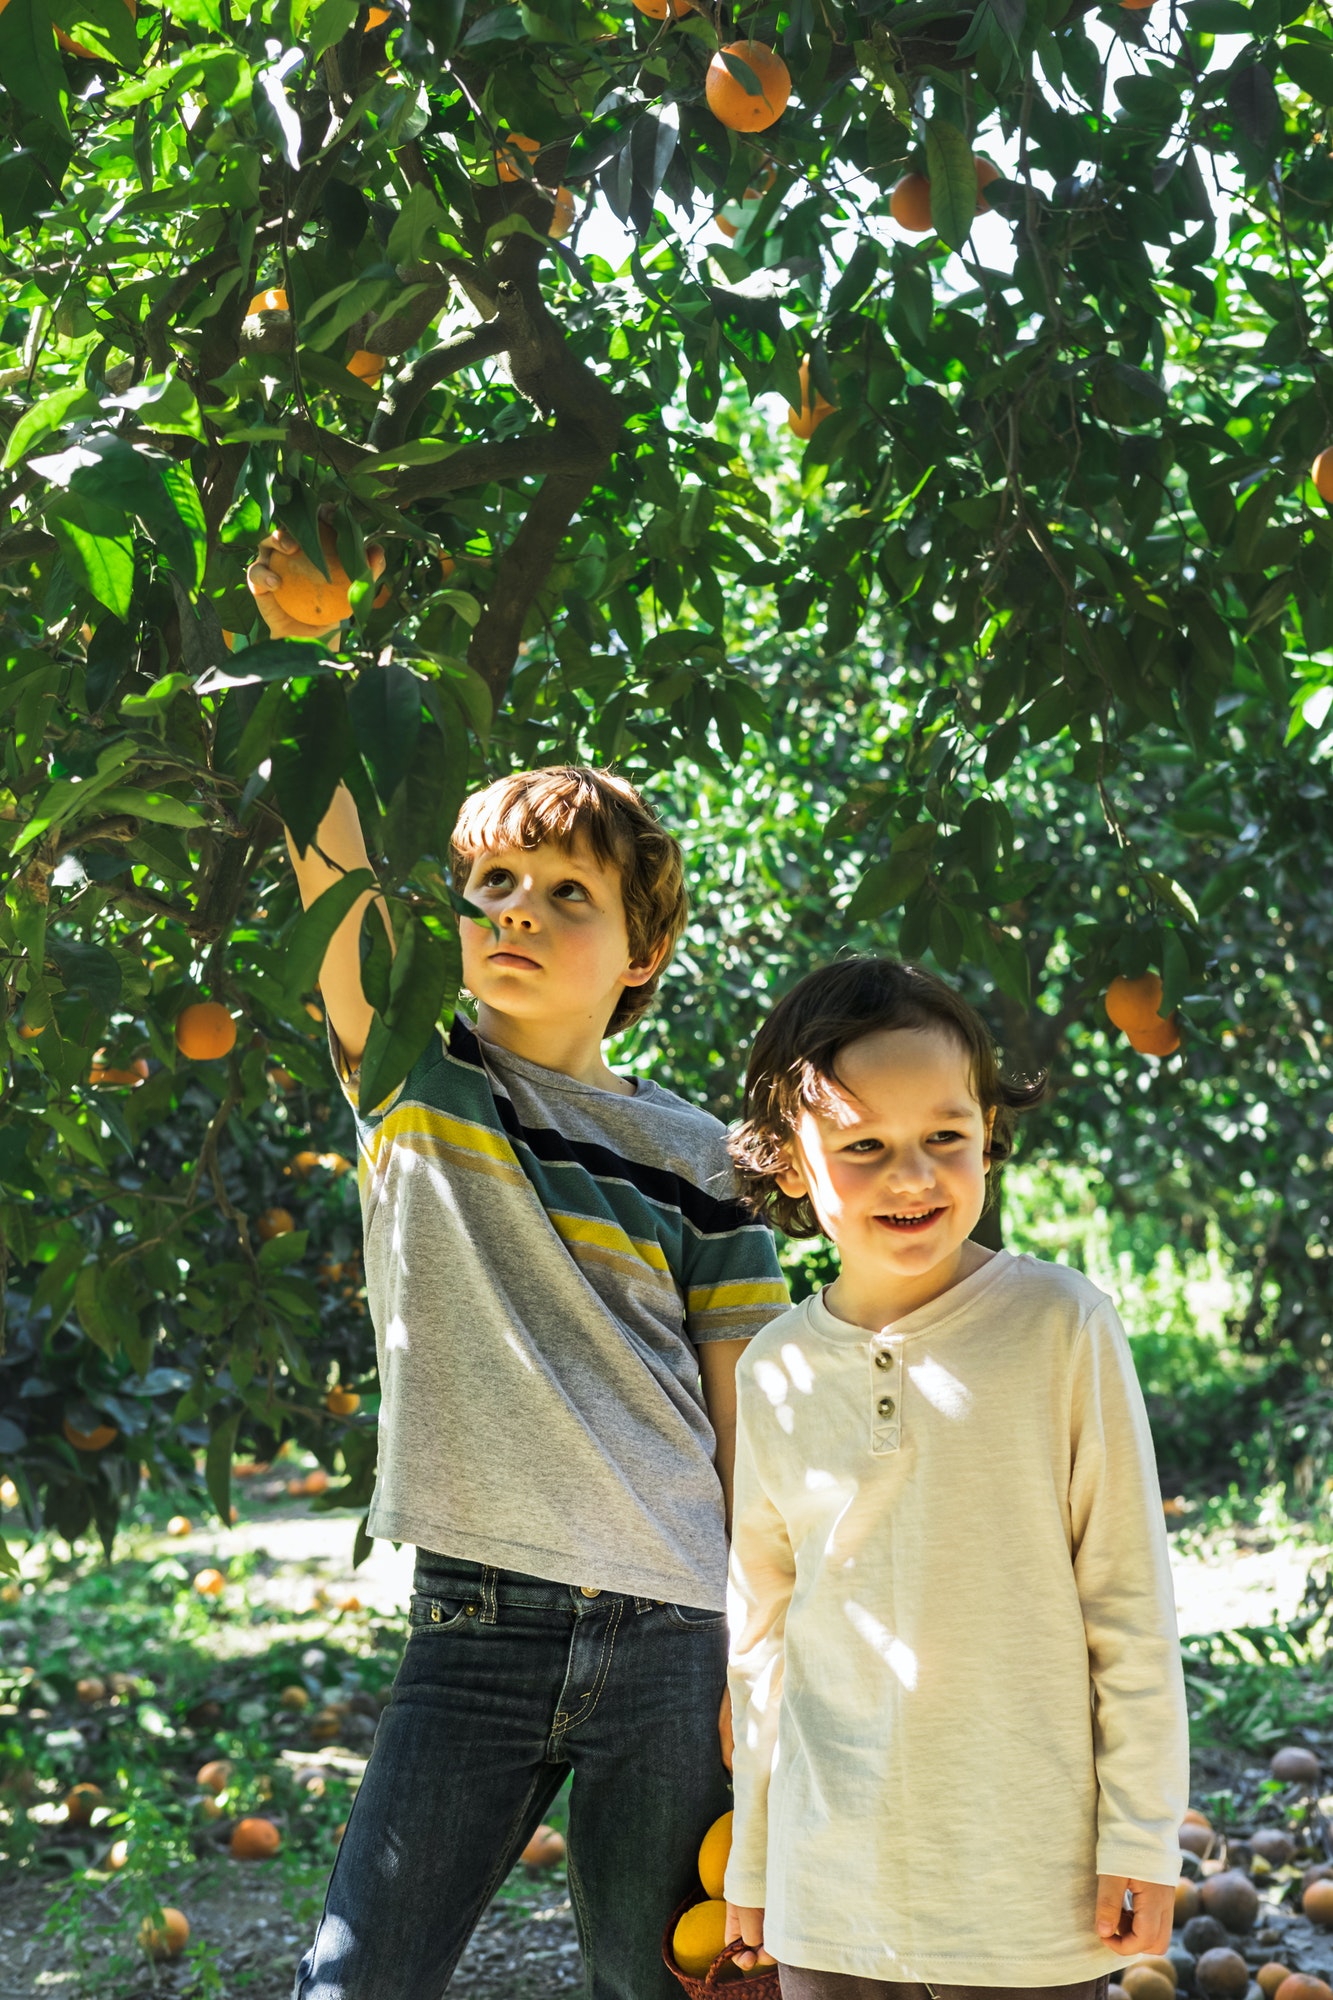 Happy children pick oranges in the garden.